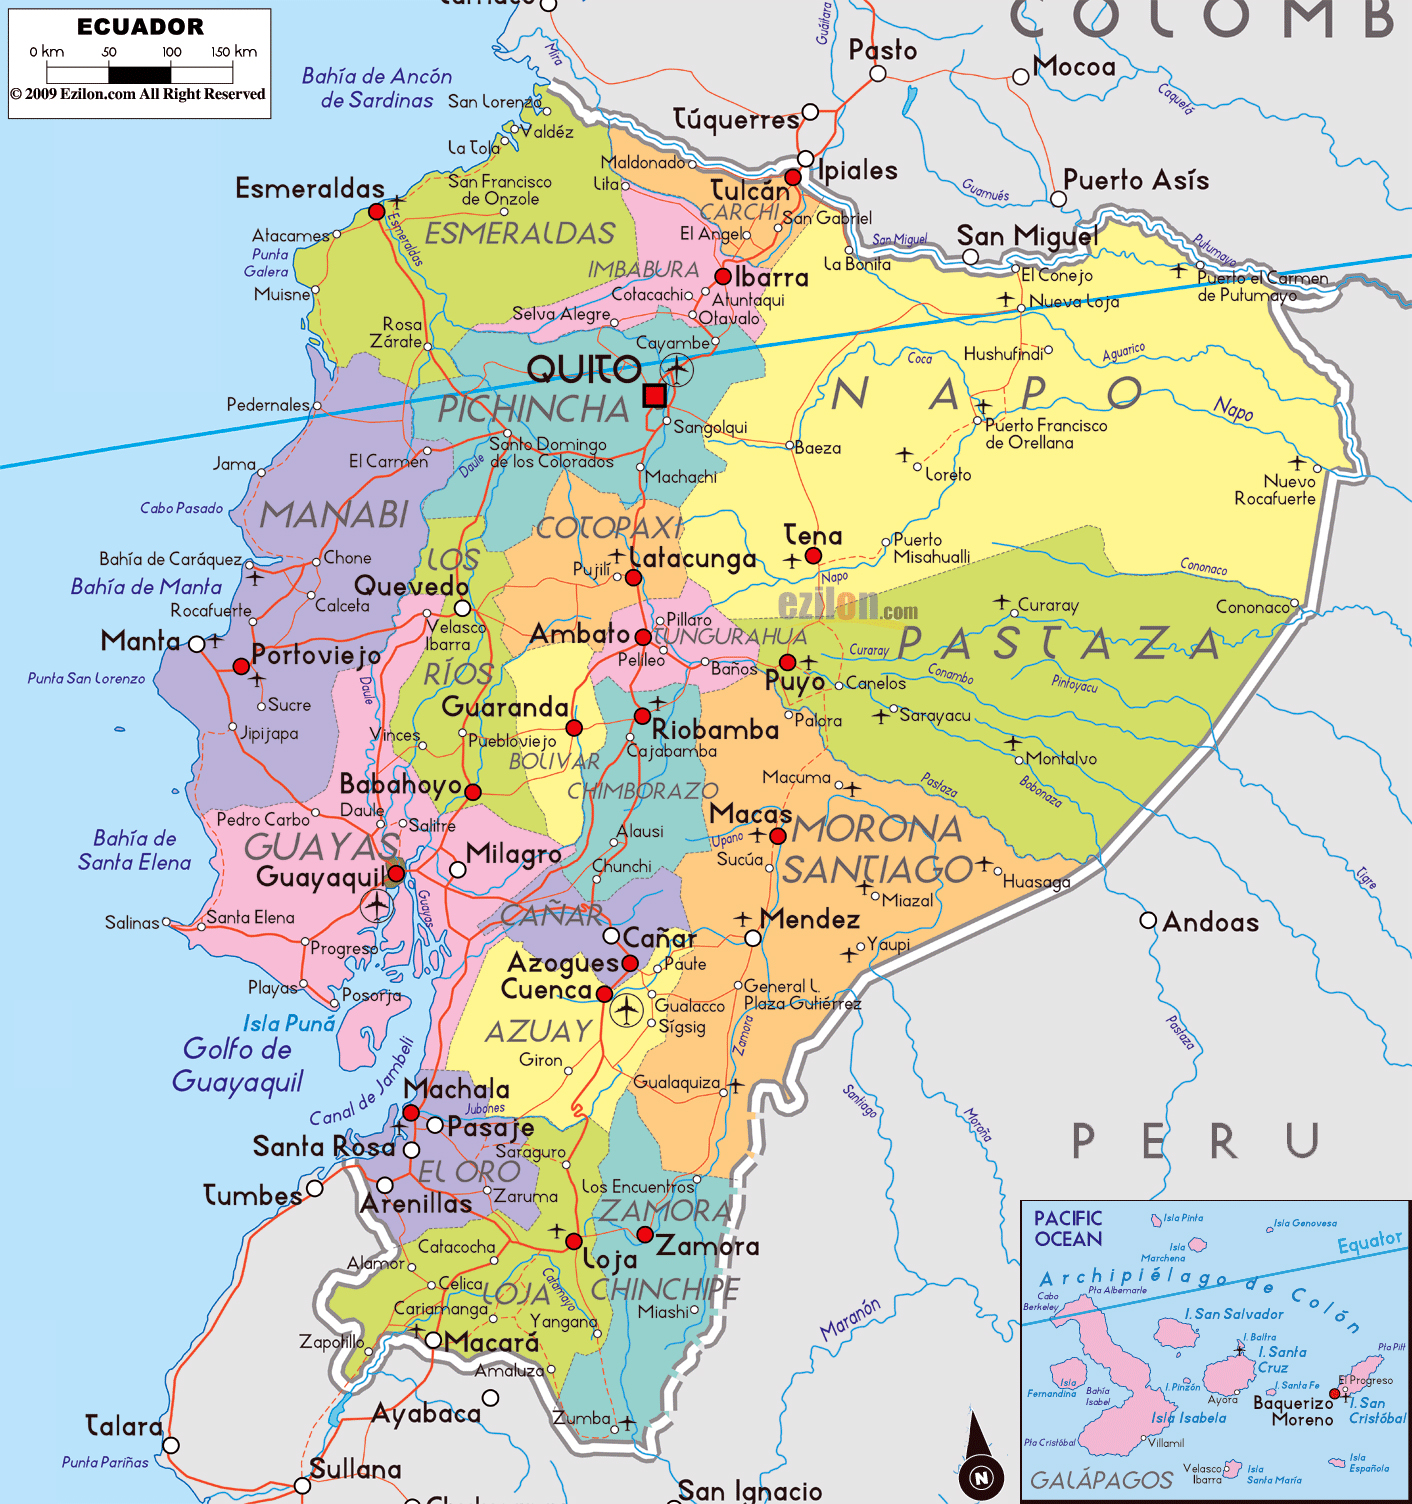 Grande Mapa Político Y Administrativo De Ecuador Con Carreteras